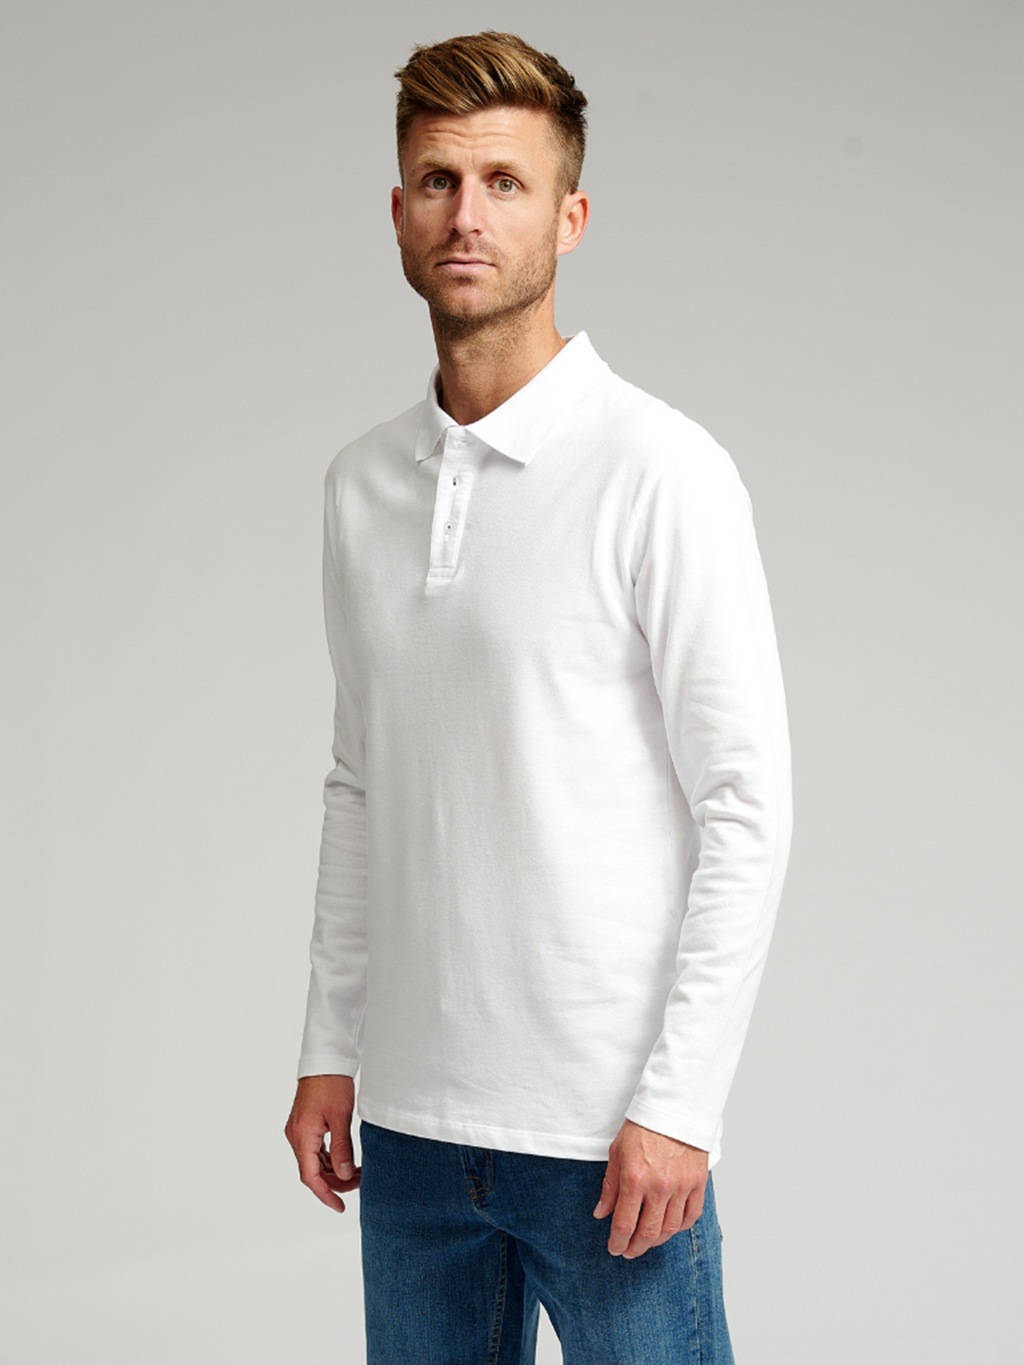 Muscle Long Sleeve Polo Shirt - White